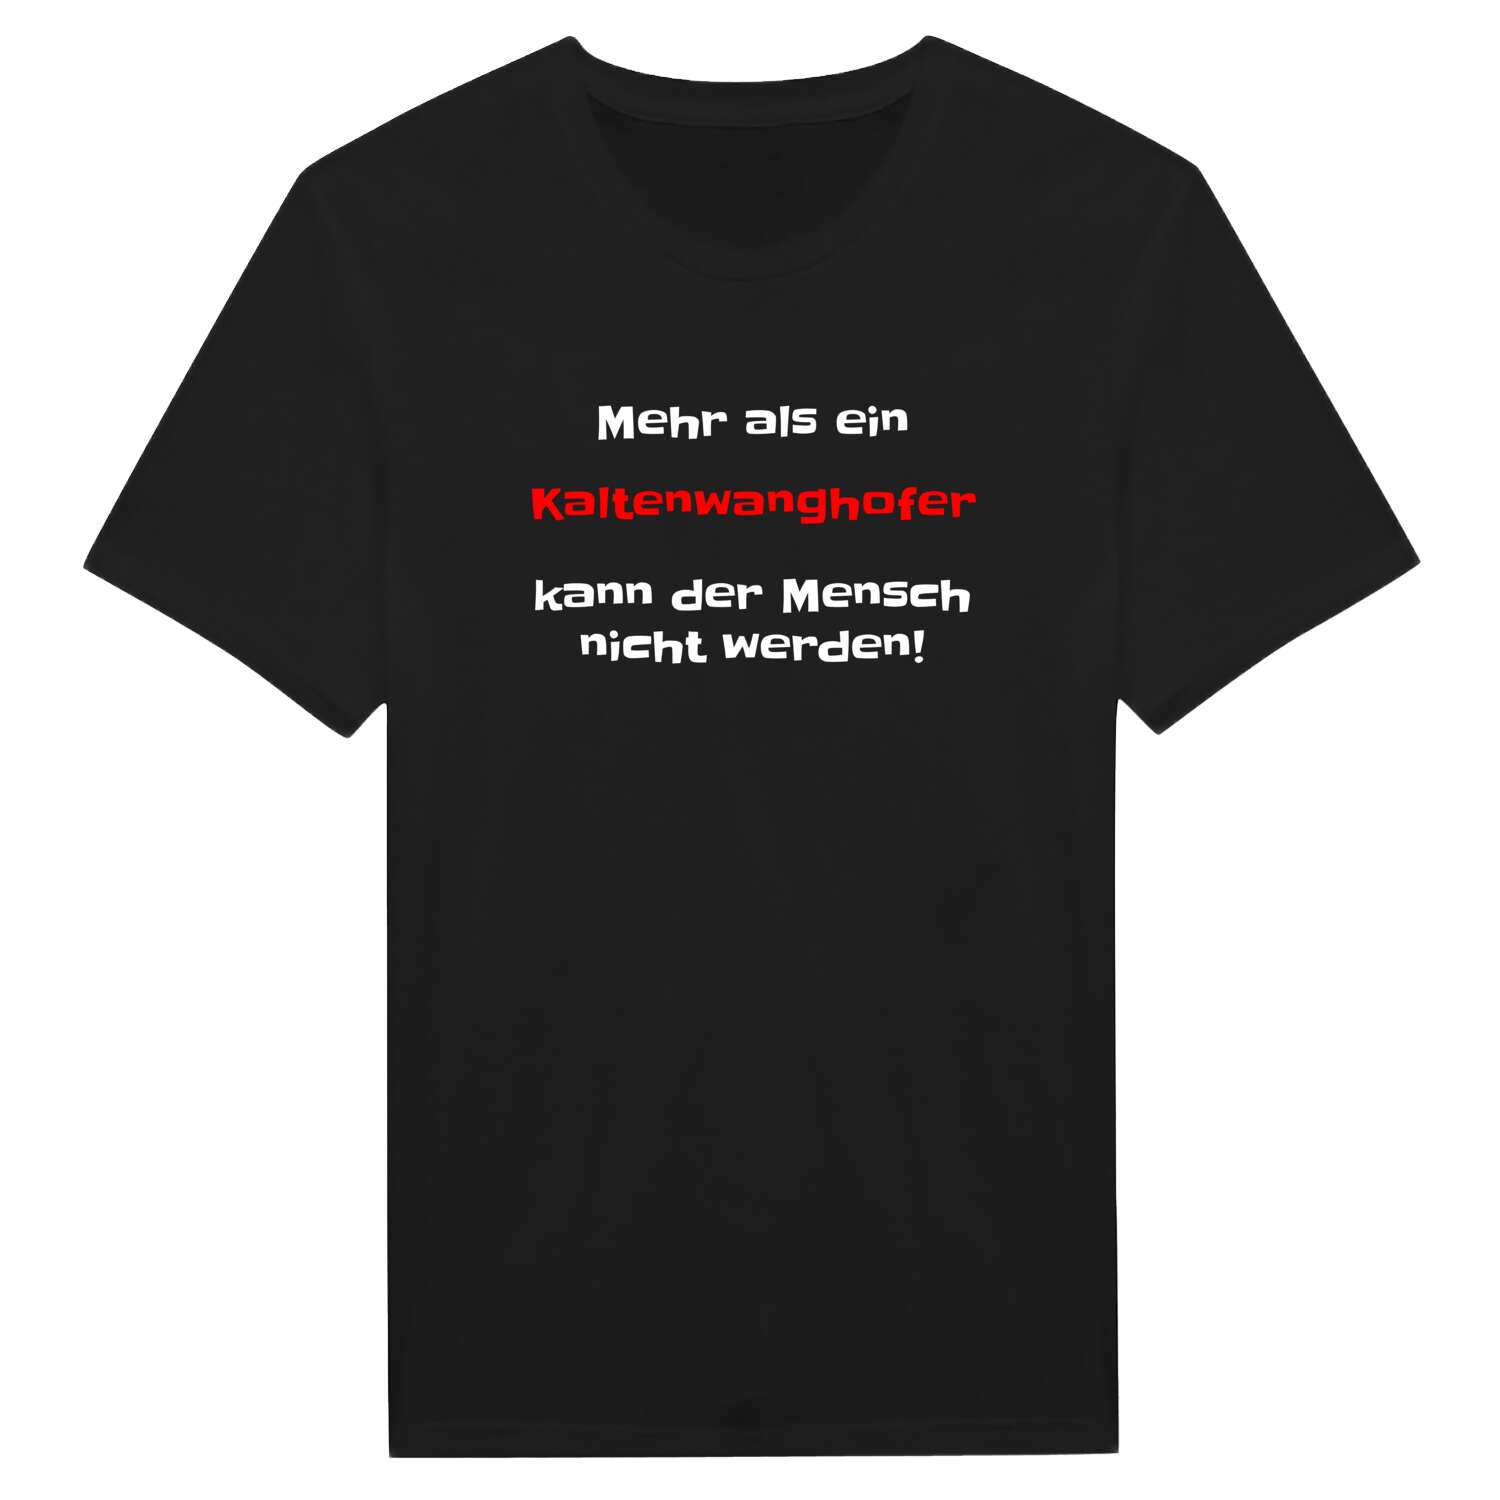 Kaltenwanghof T-Shirt »Mehr als ein«